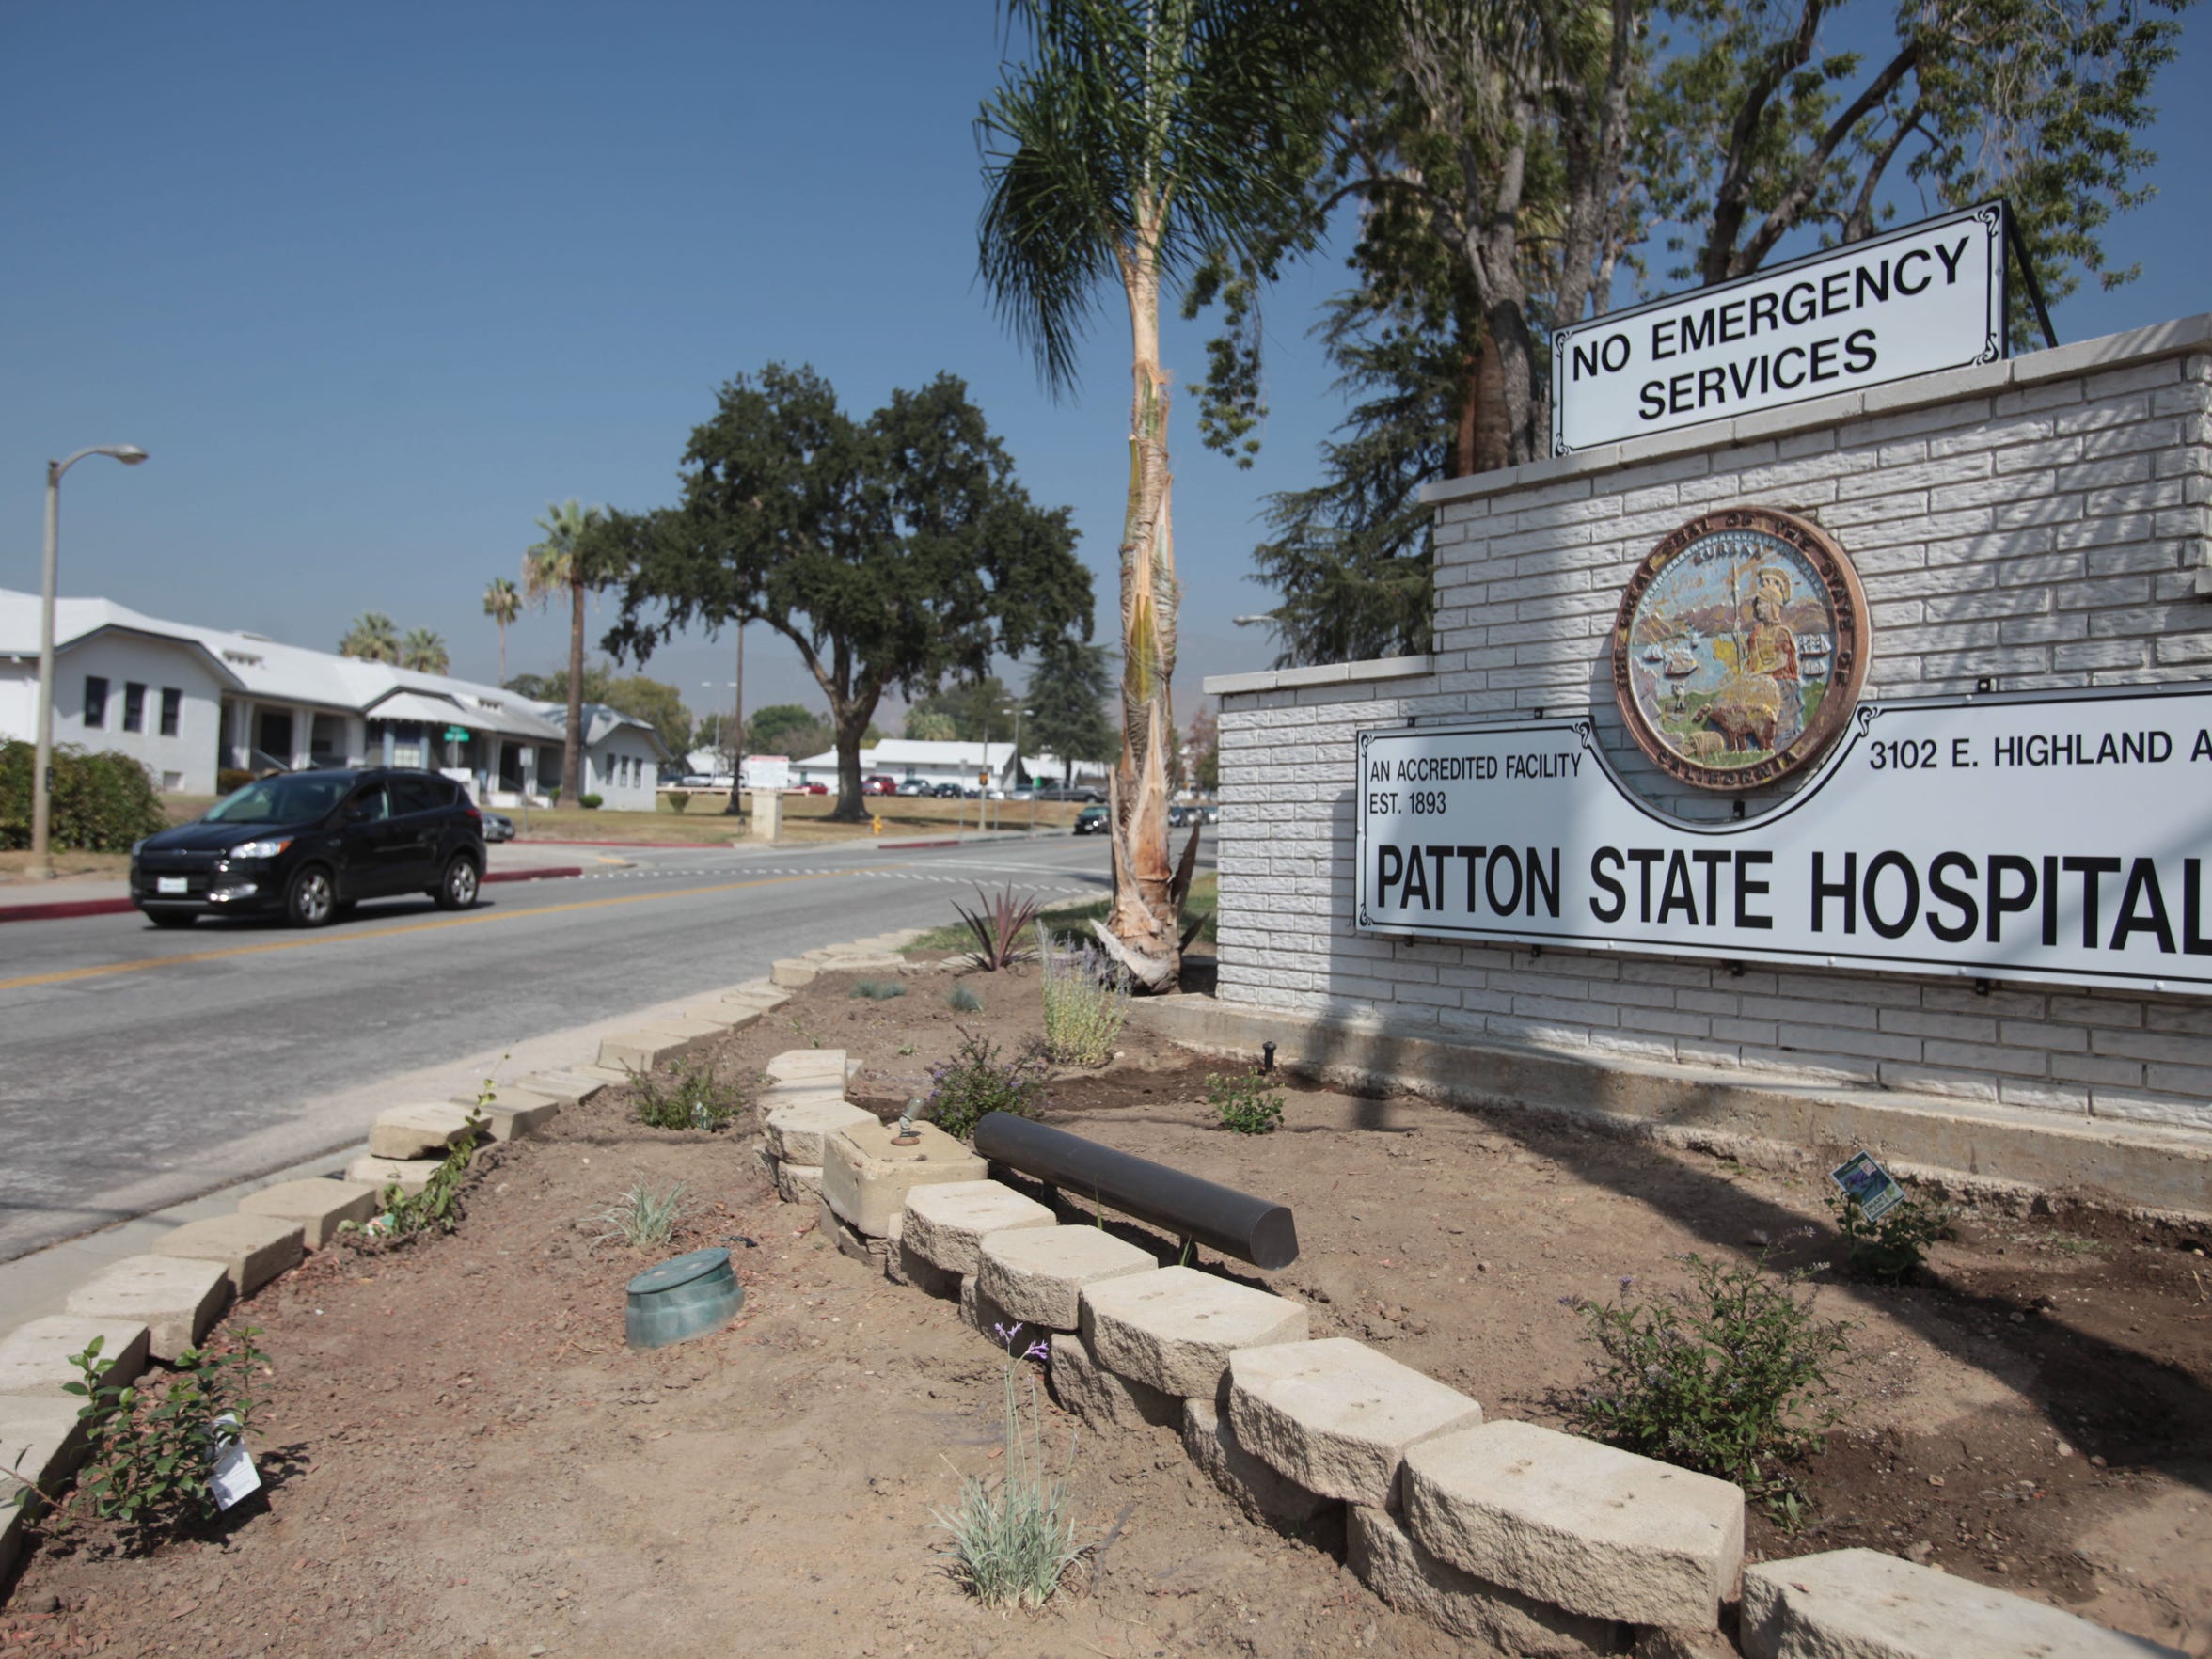 At Patton, prison problems plague hospital patients